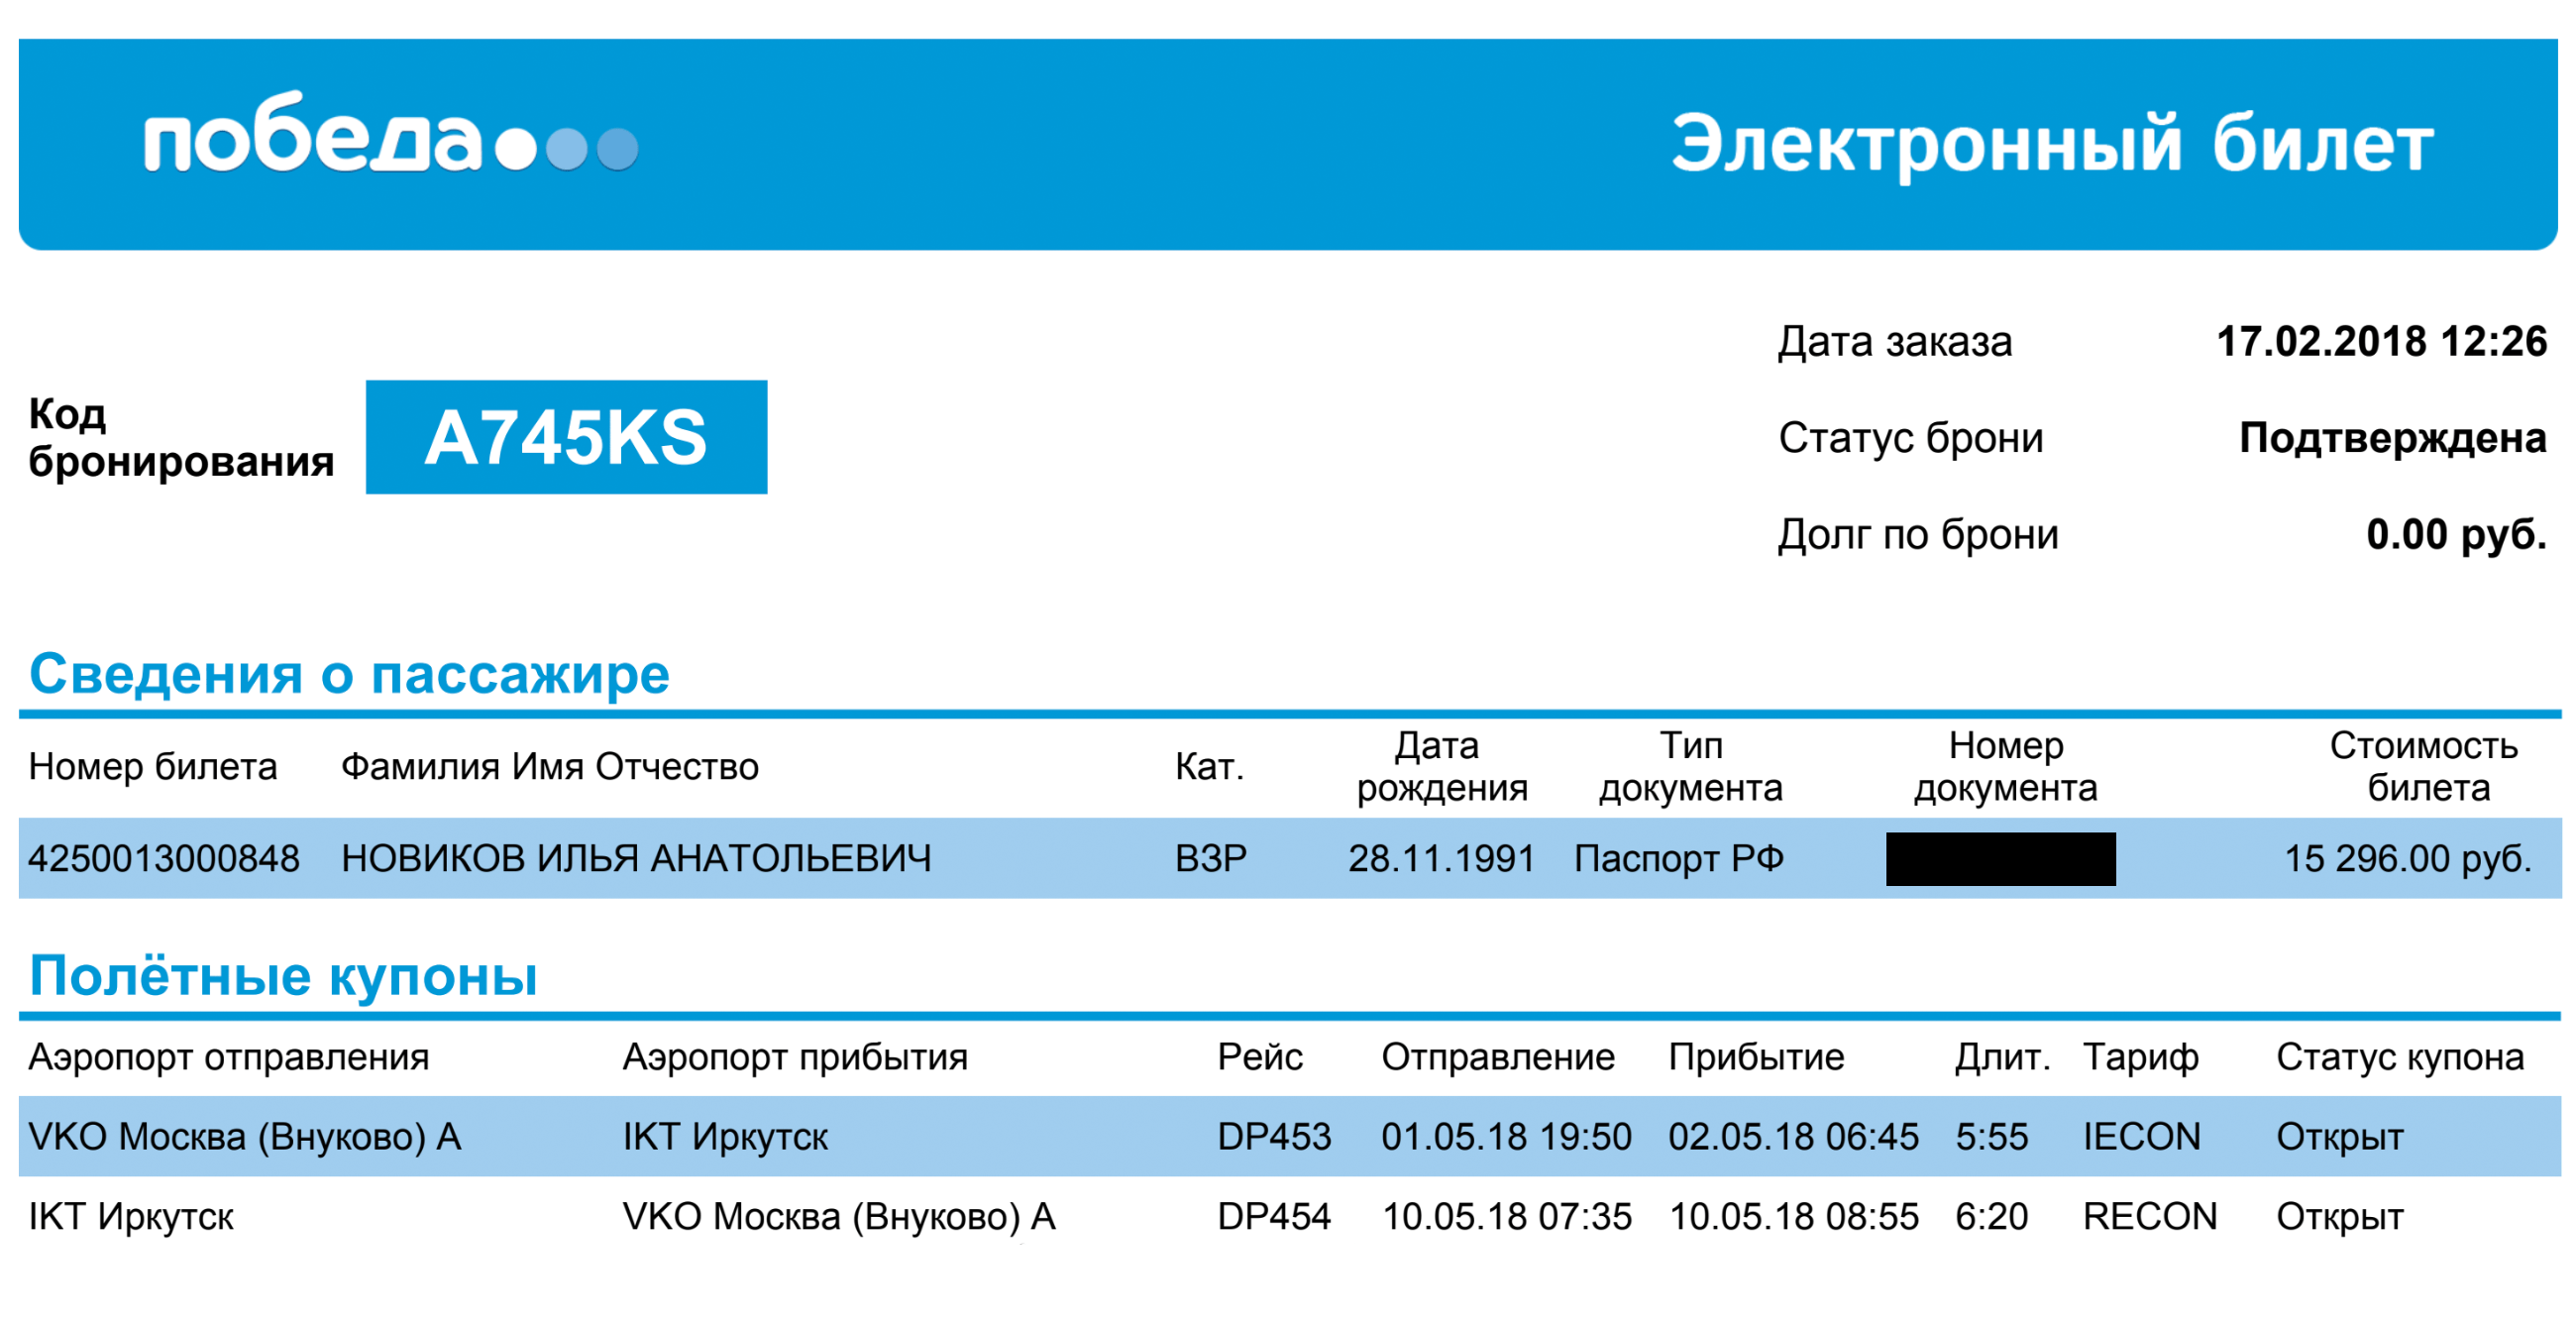 Перелет из Москвы в Иркутск и обратно в мае 2018 года обошелся мне в 15 тысяч